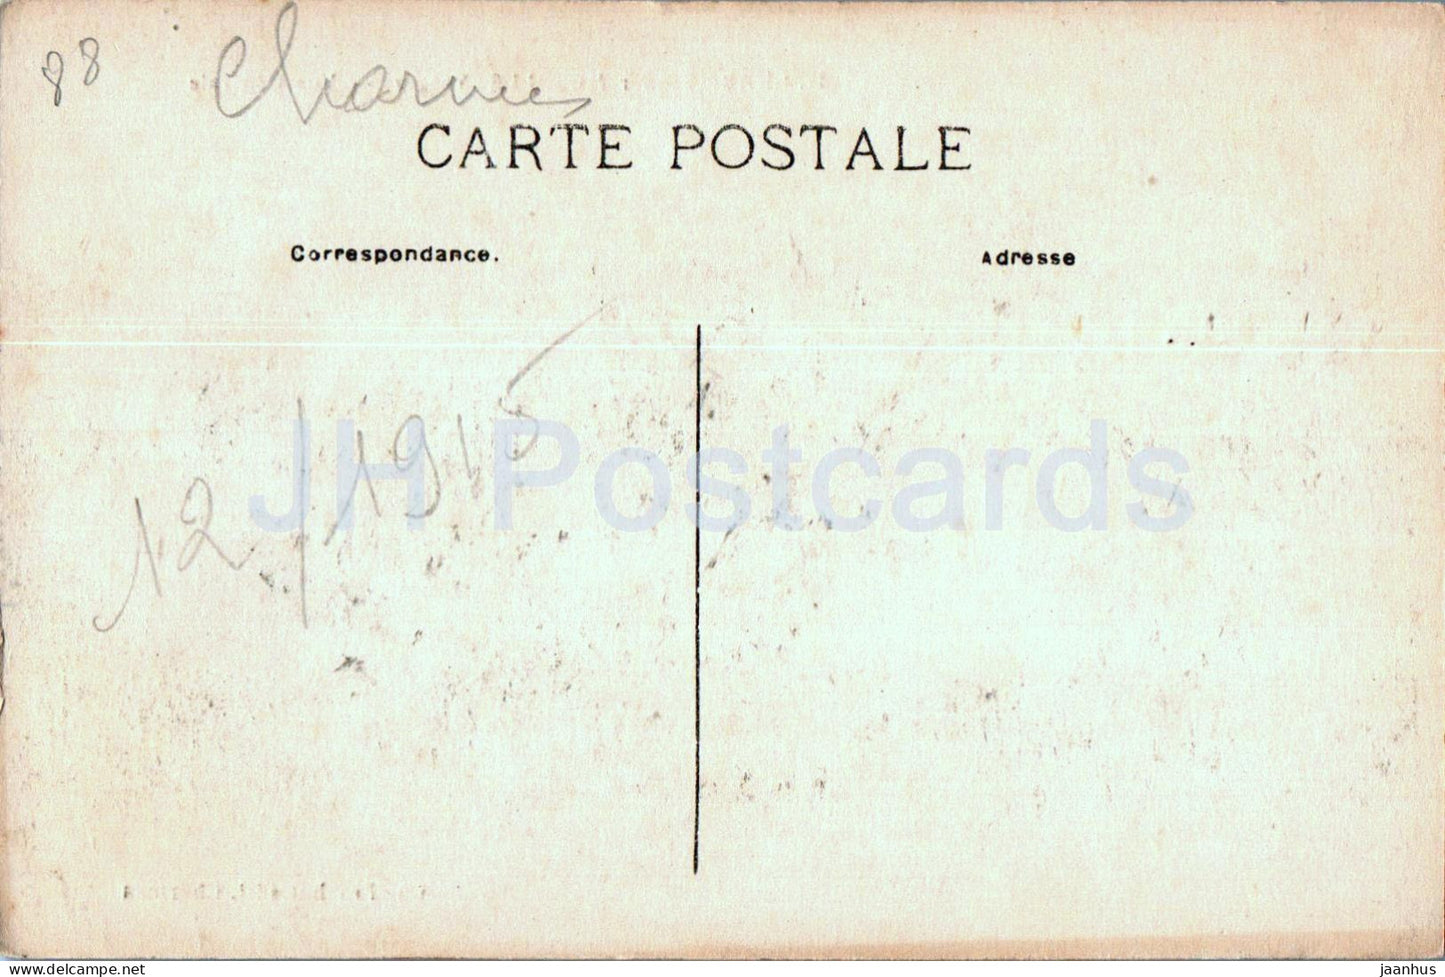 Charmes sur Moselle - Vue Generale - 32 - alte Postkarte - 1915 - Frankreich - gebraucht 